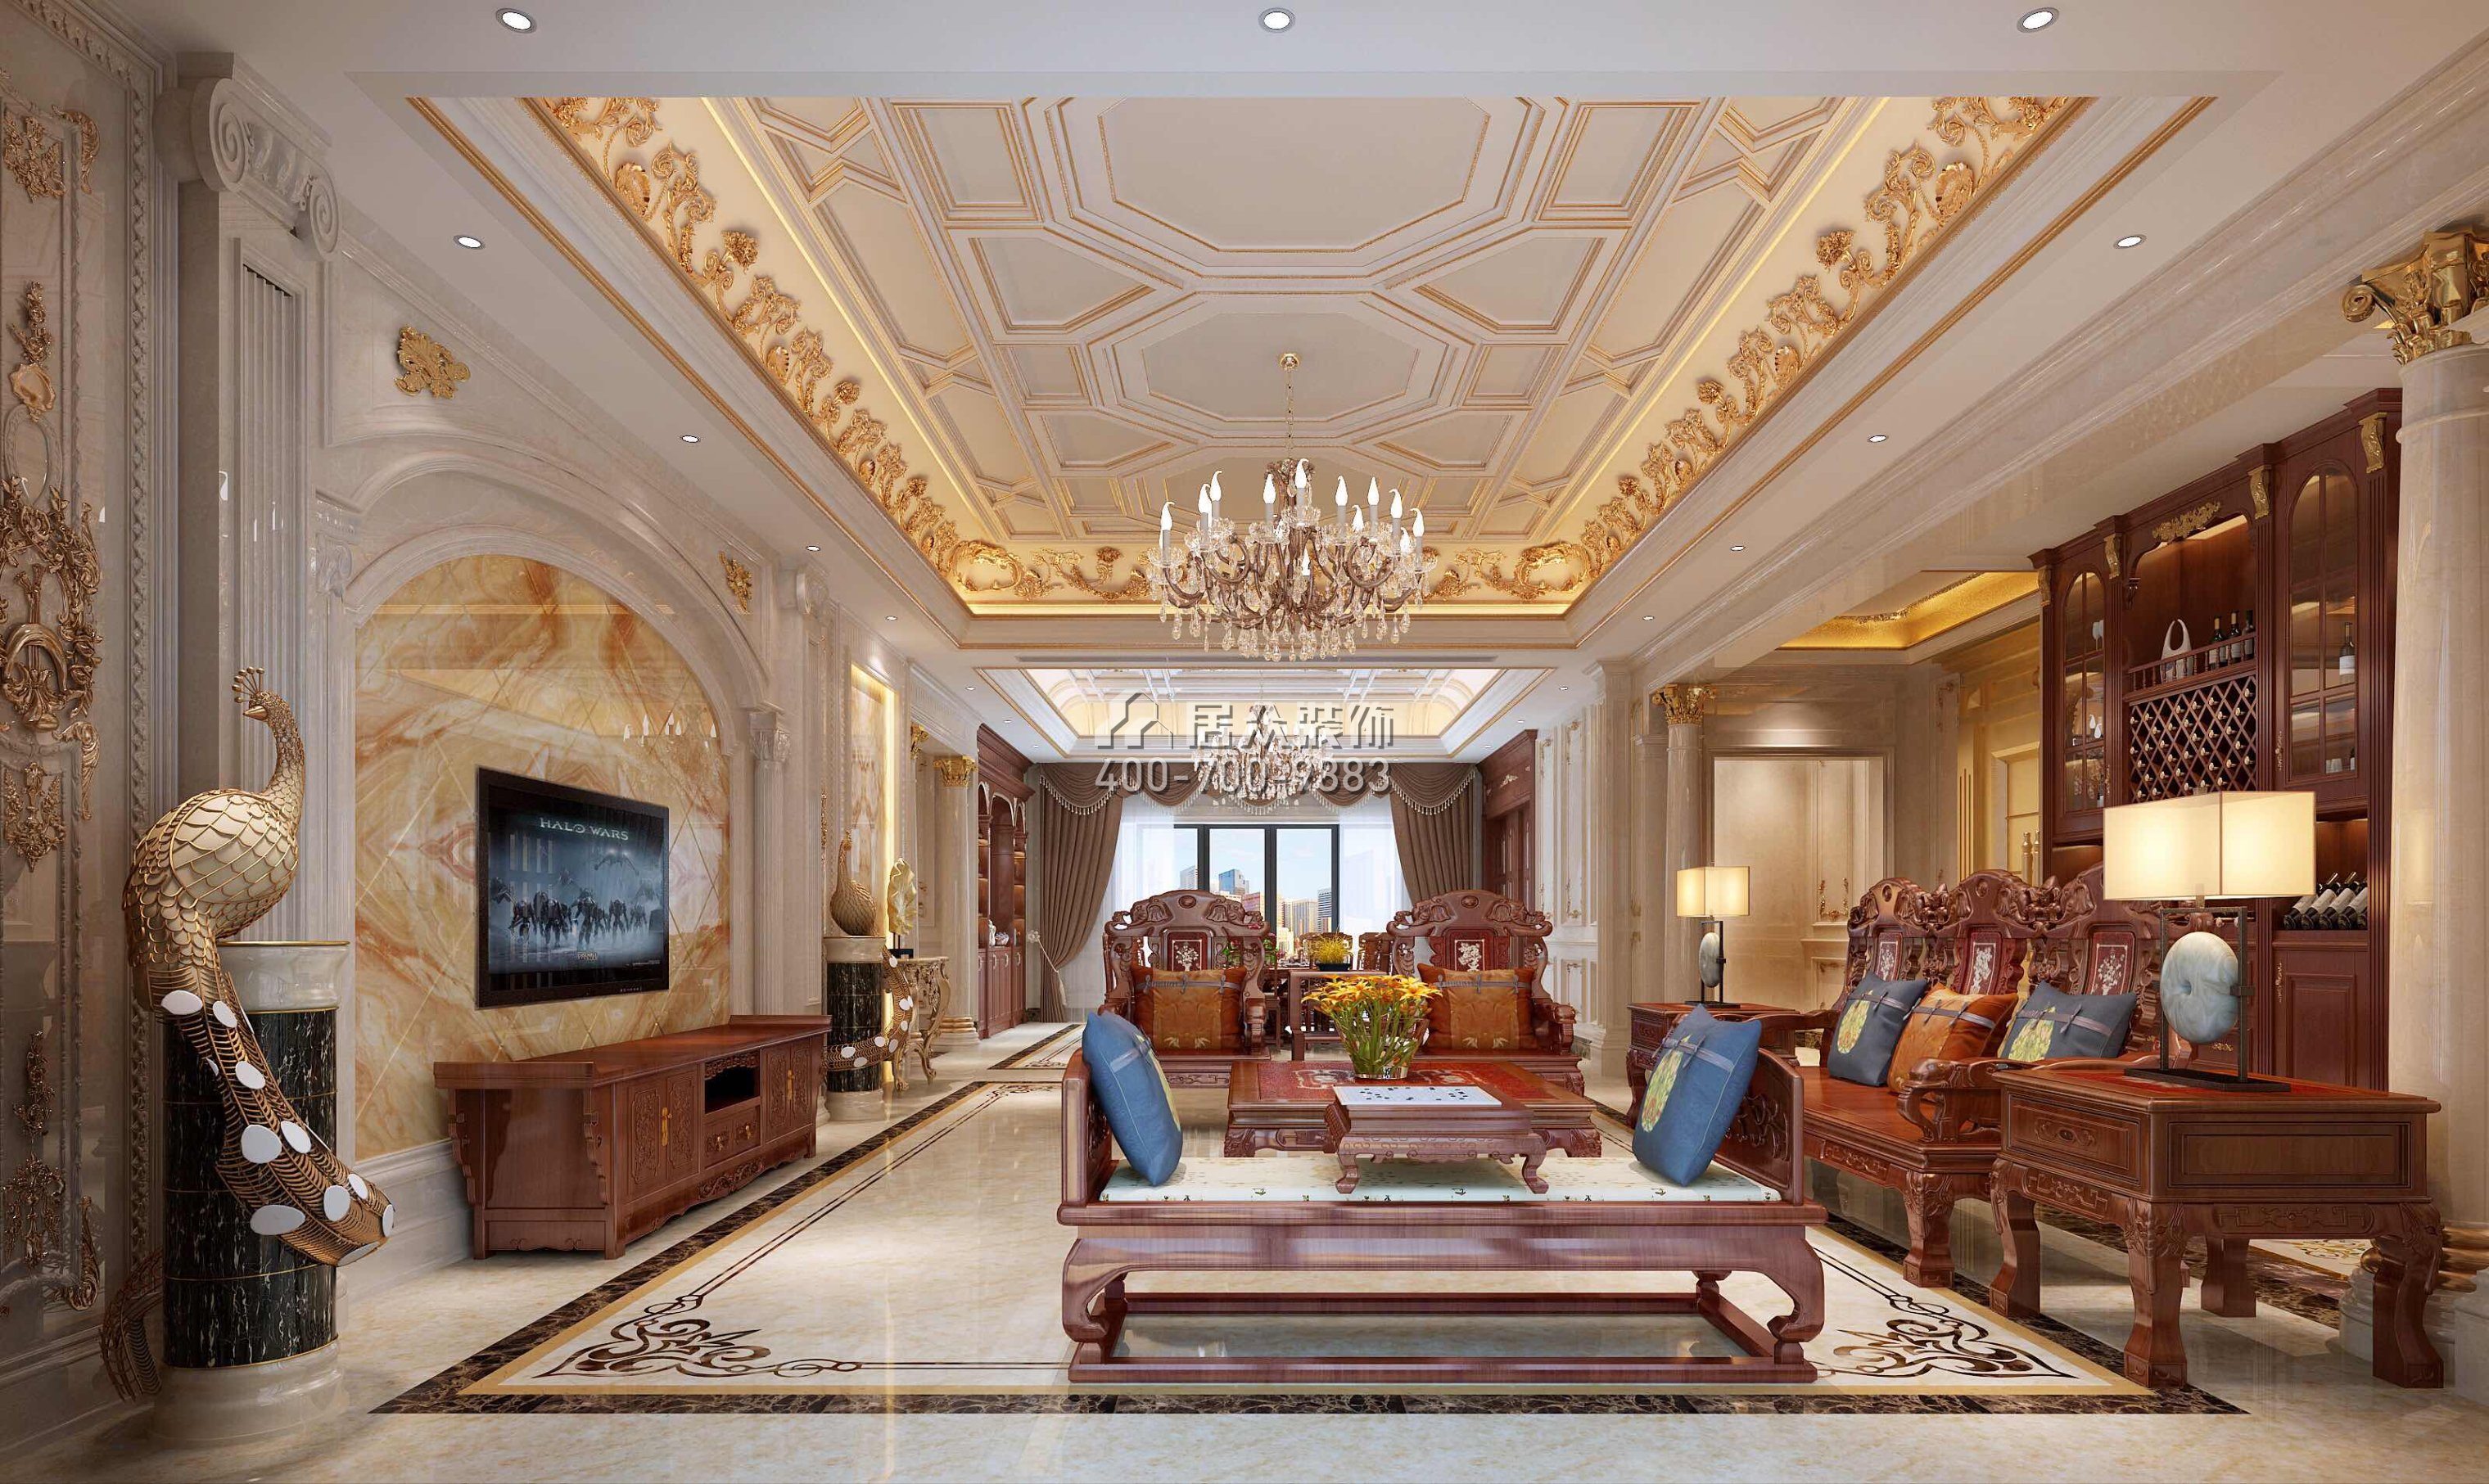 龍泉豪苑560平方米混搭風格平層戶型客廳裝修效果圖